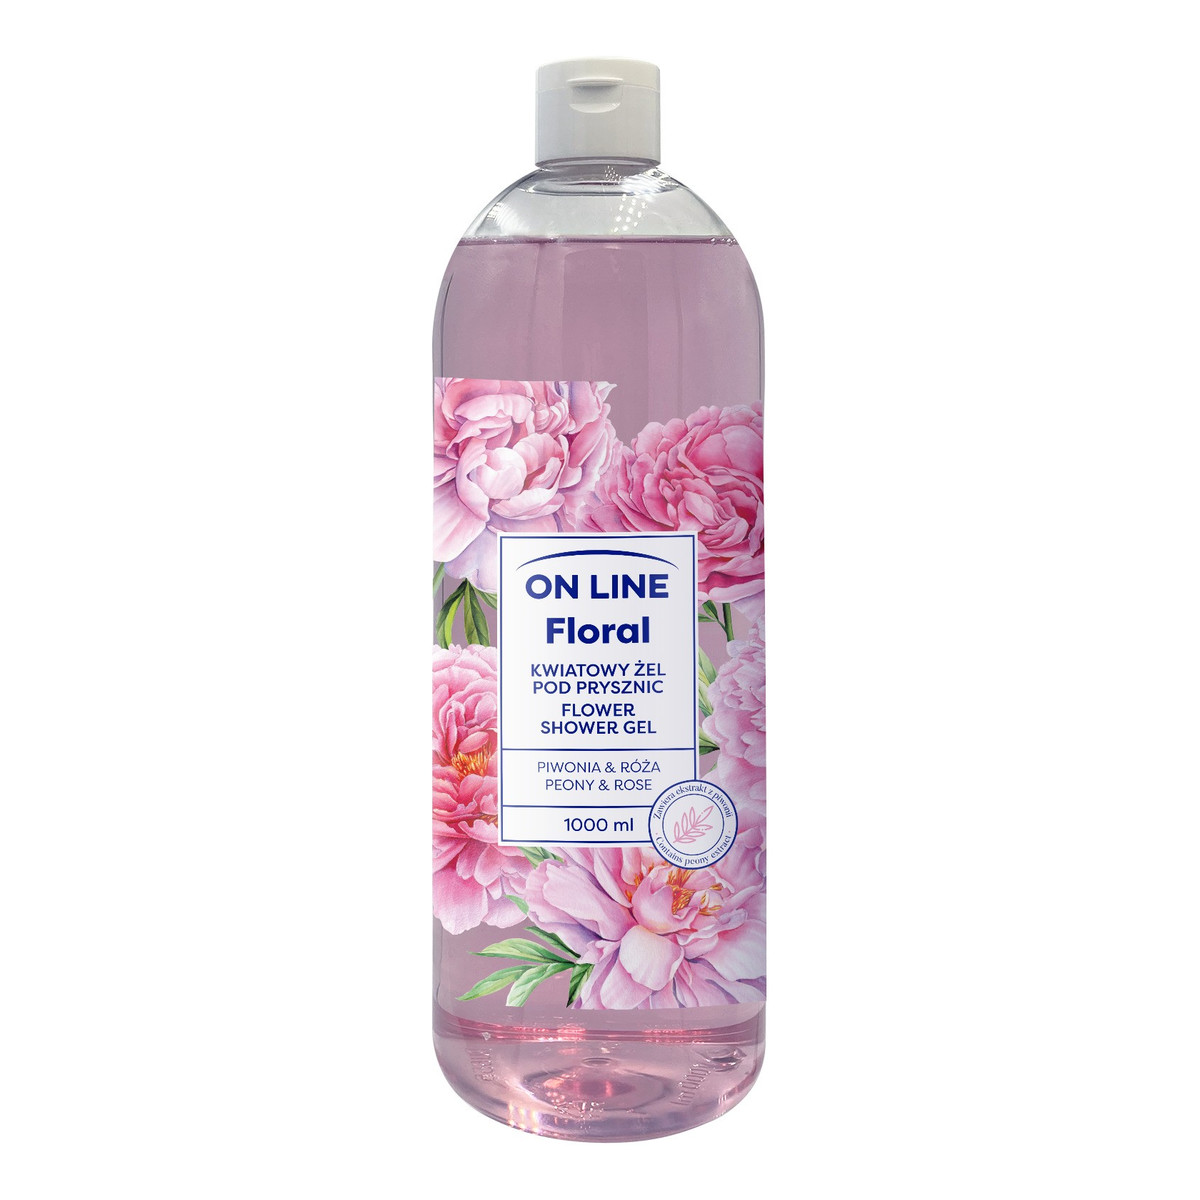 On Line Floral Kwiatowy żel pod prysznic - Piwonia & Róża 1000ml